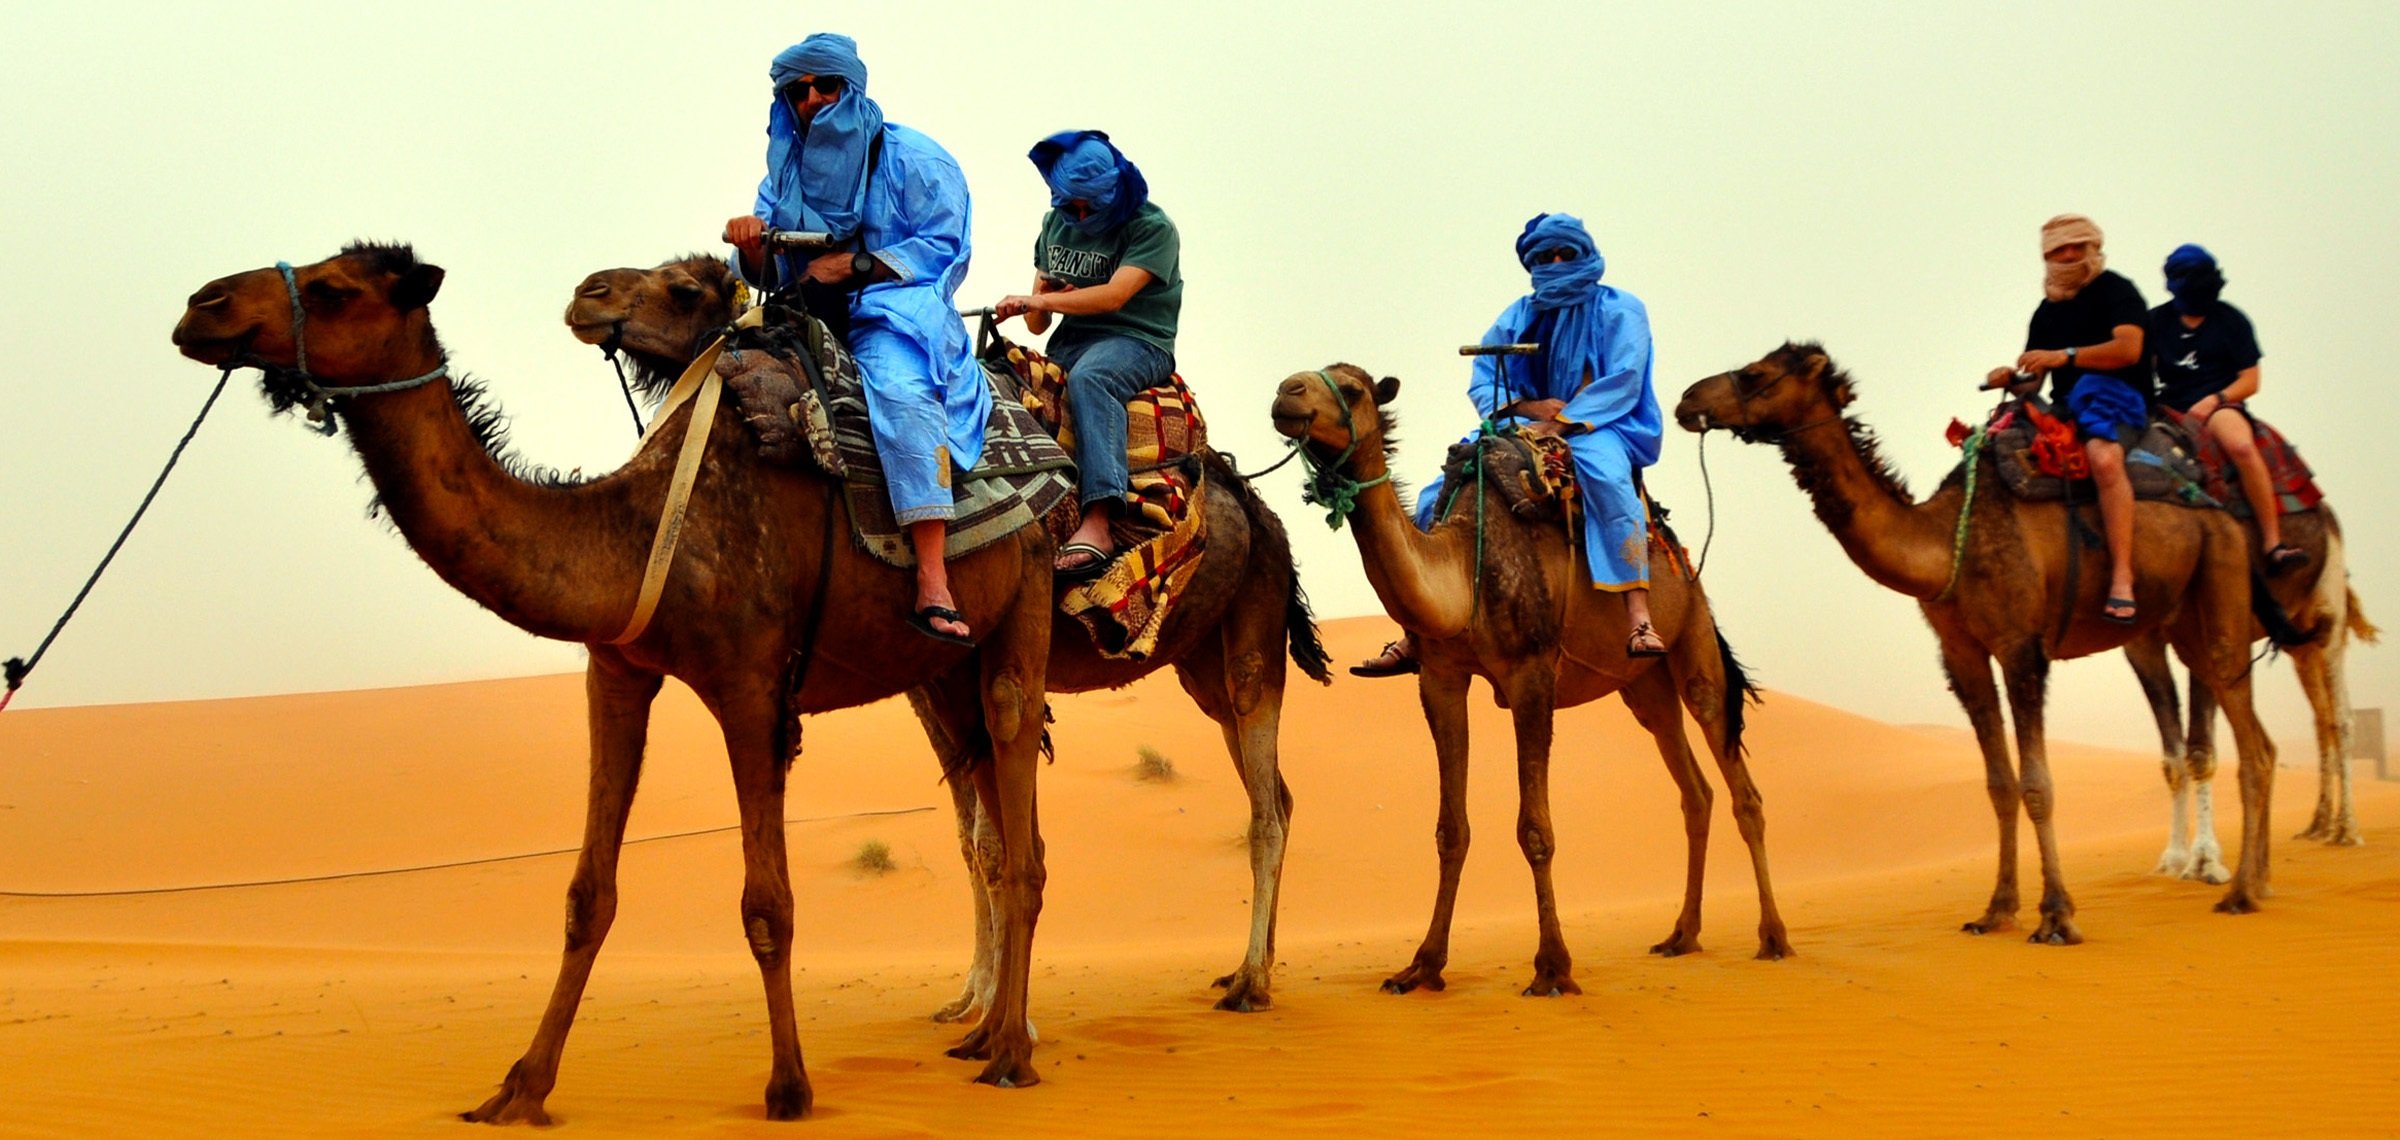 Люди каравана. Родина одногорбого верблюда. Бедуины в Египте. Туркменский Арвана - одногорбый верблюд. Одногорбый верблюд с наездником.